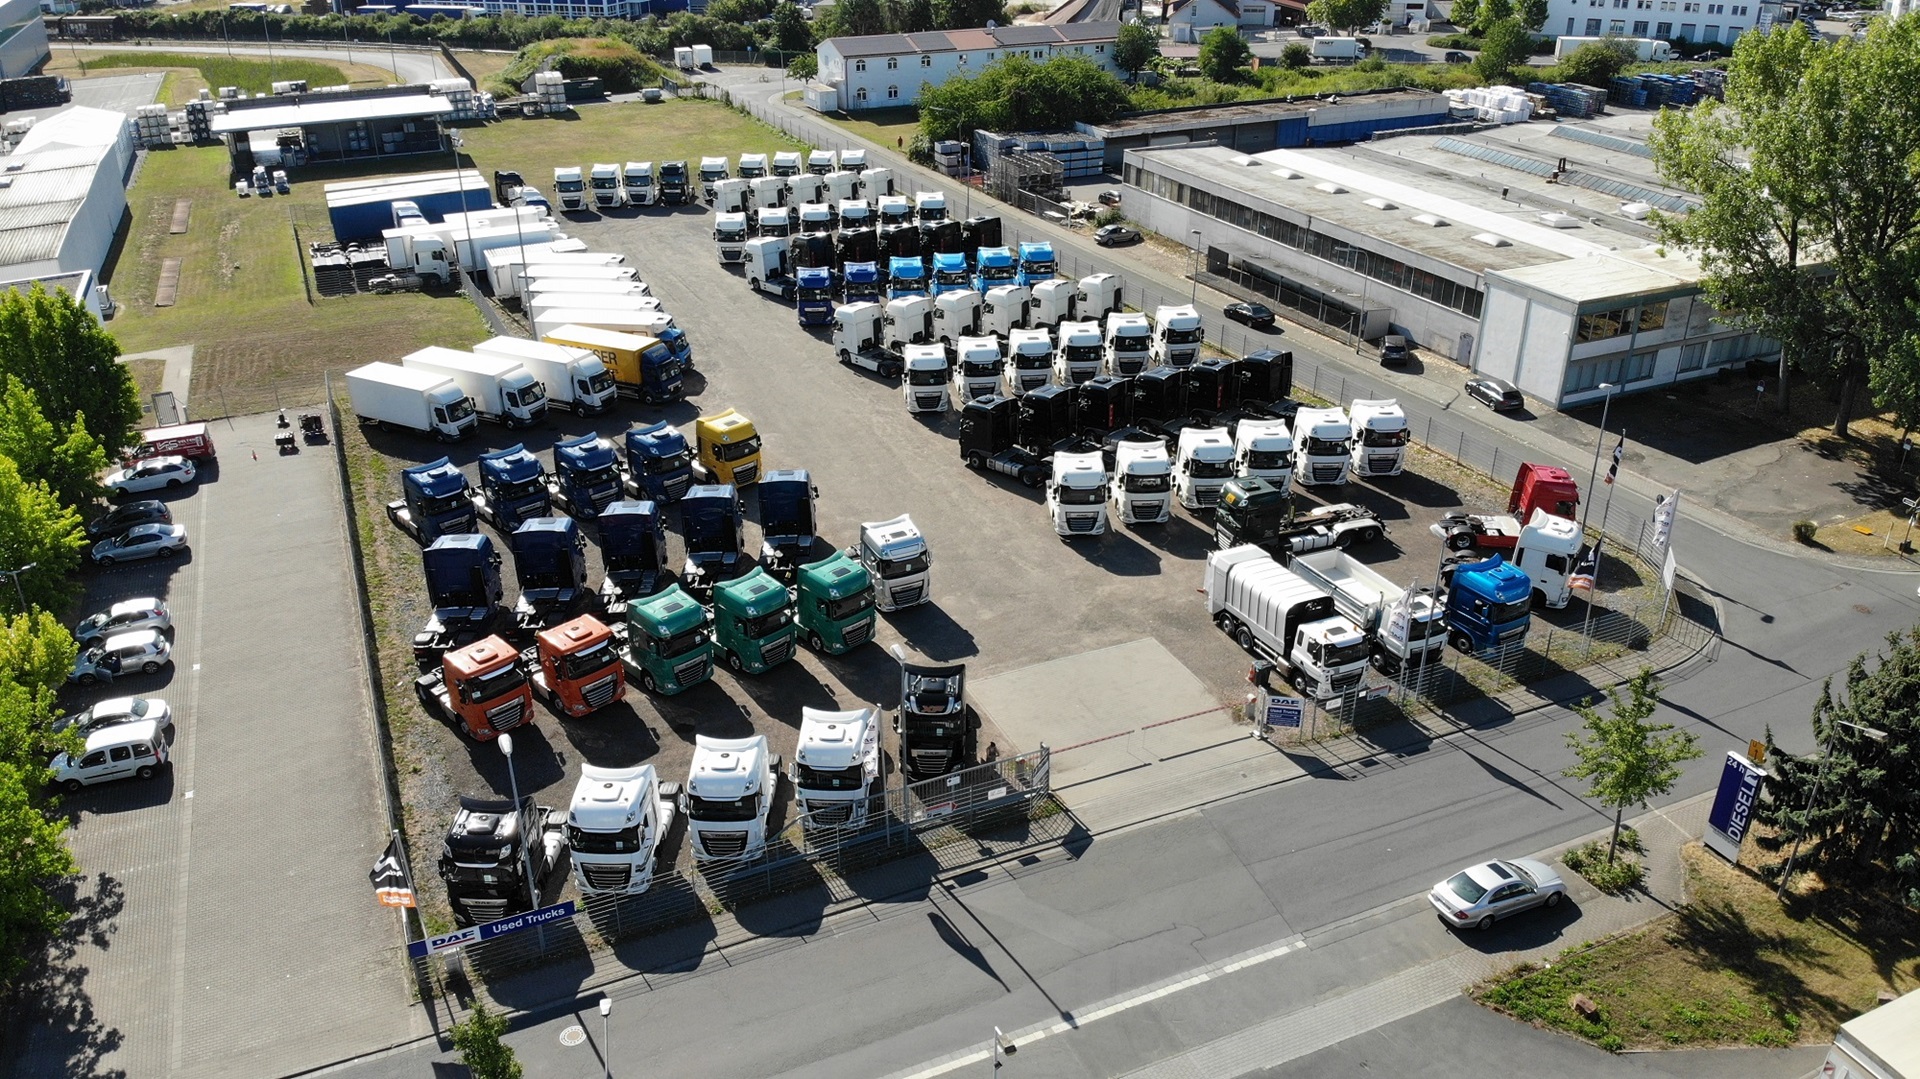 DAF-used-trucks-retail-center-Dieburg